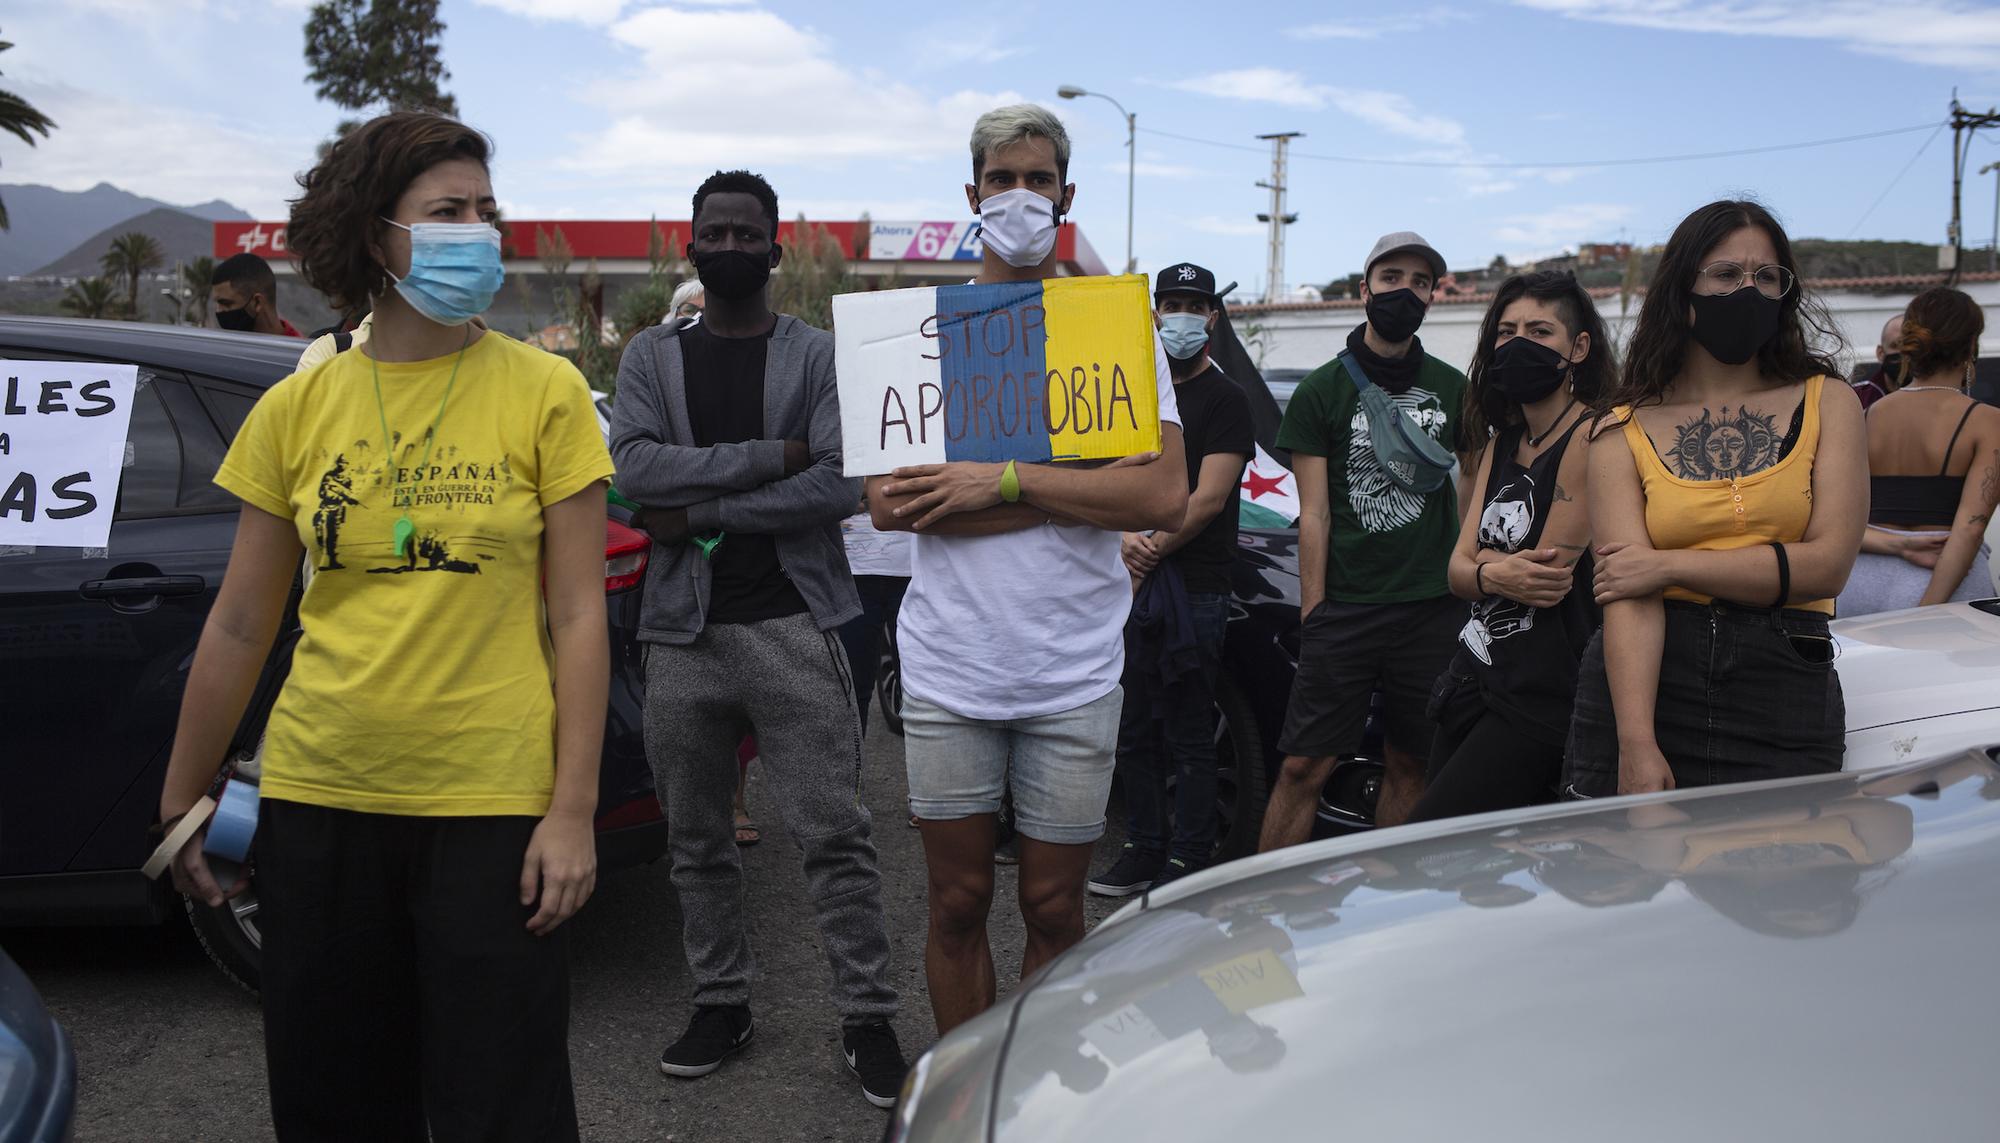 Una caravana de vehículos marcha en Gran Canaria por los derechos de las personas migrantes y las "fronteras seguras" - 11